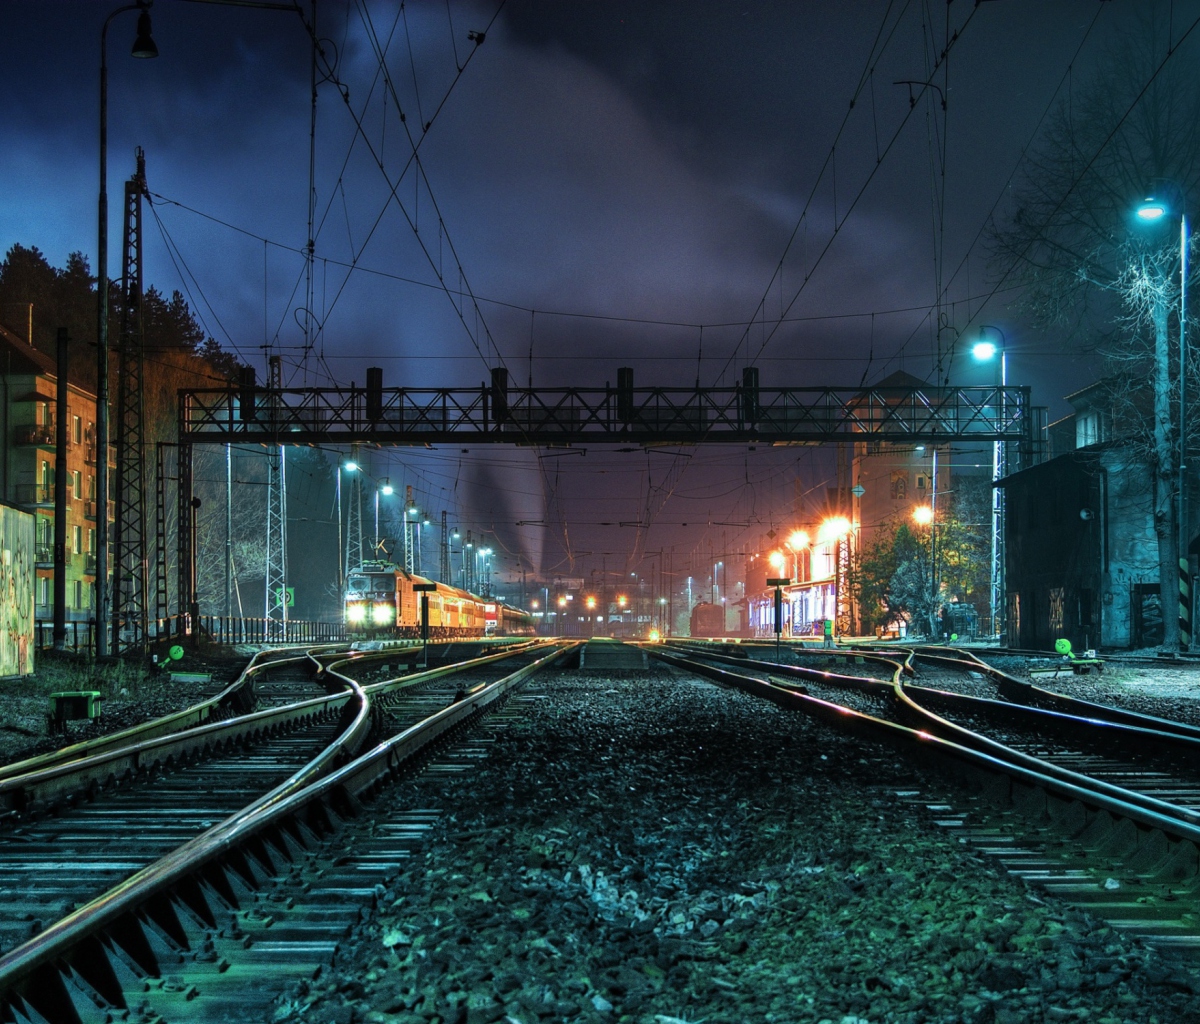 Обои Railway Station At Night 1200x1024